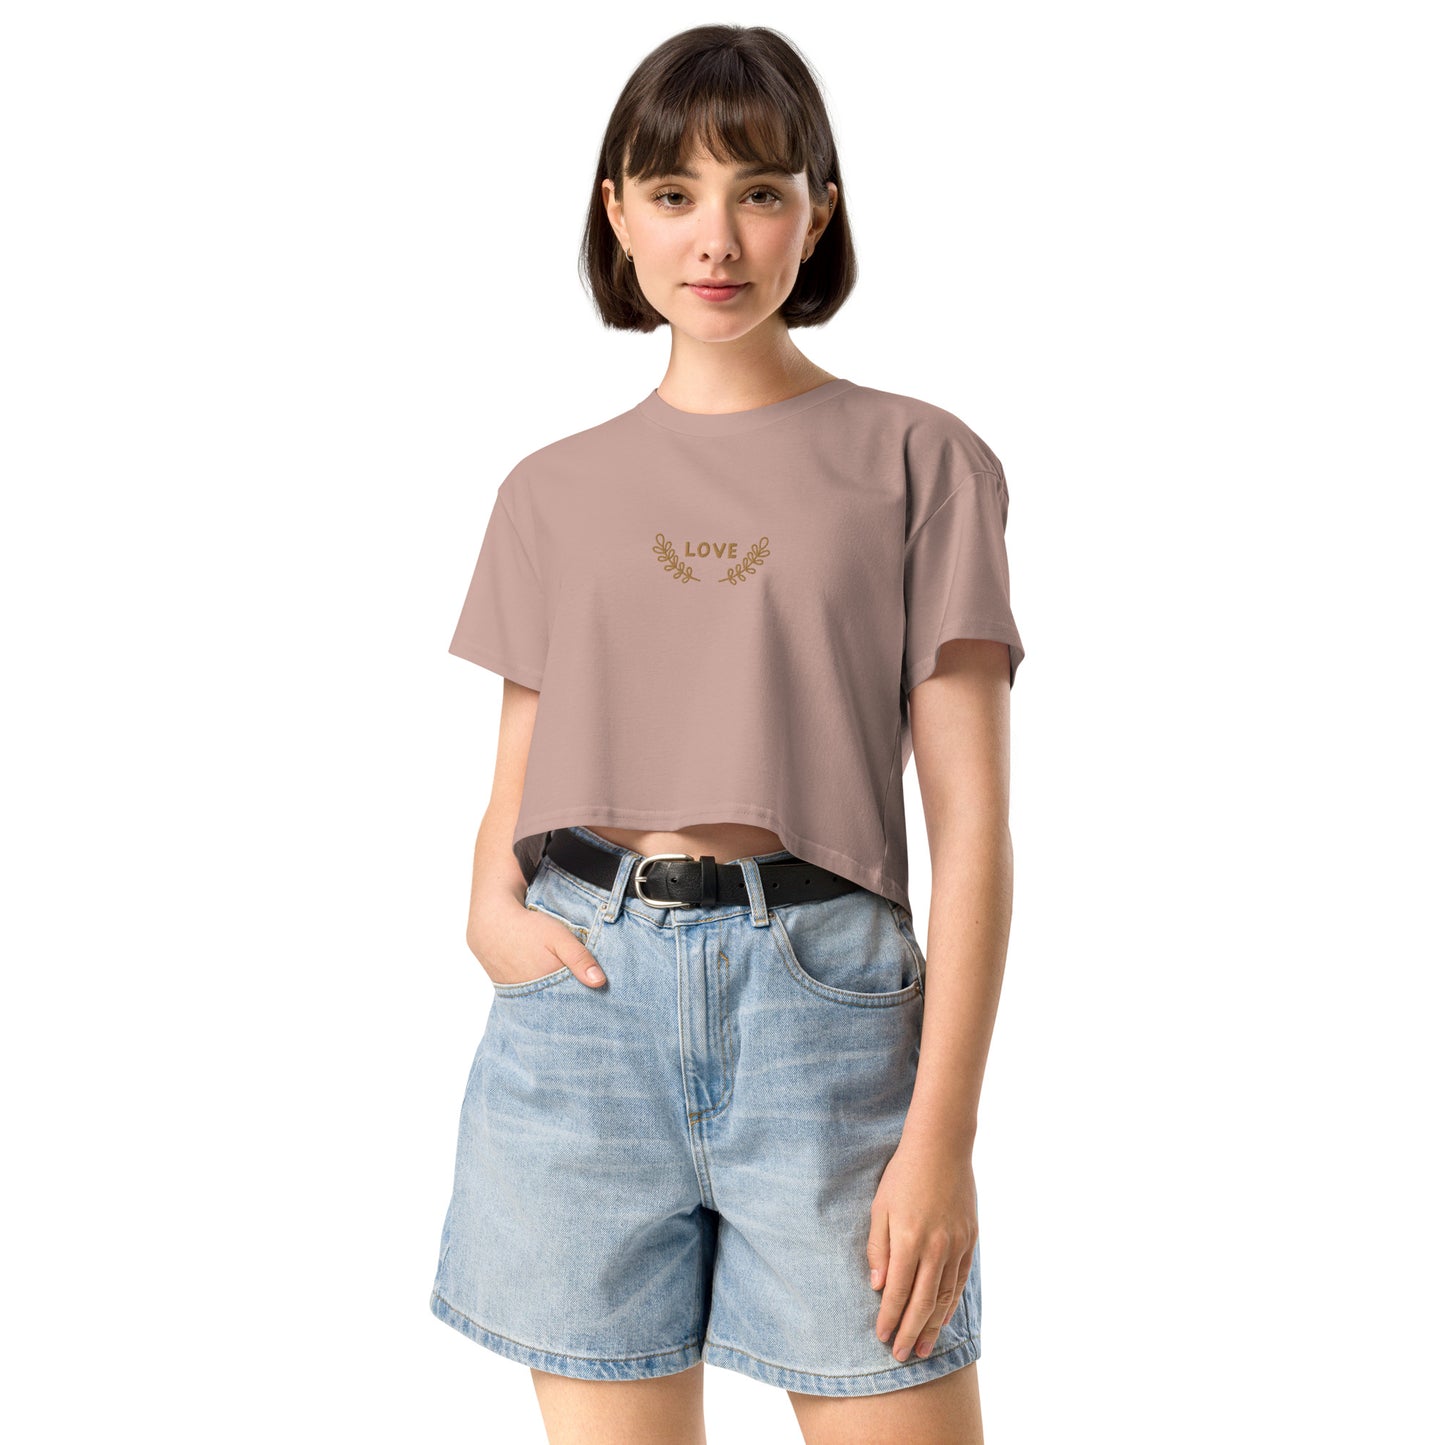 Women’s longer crop top t-shirt embroidered LOVE emblem